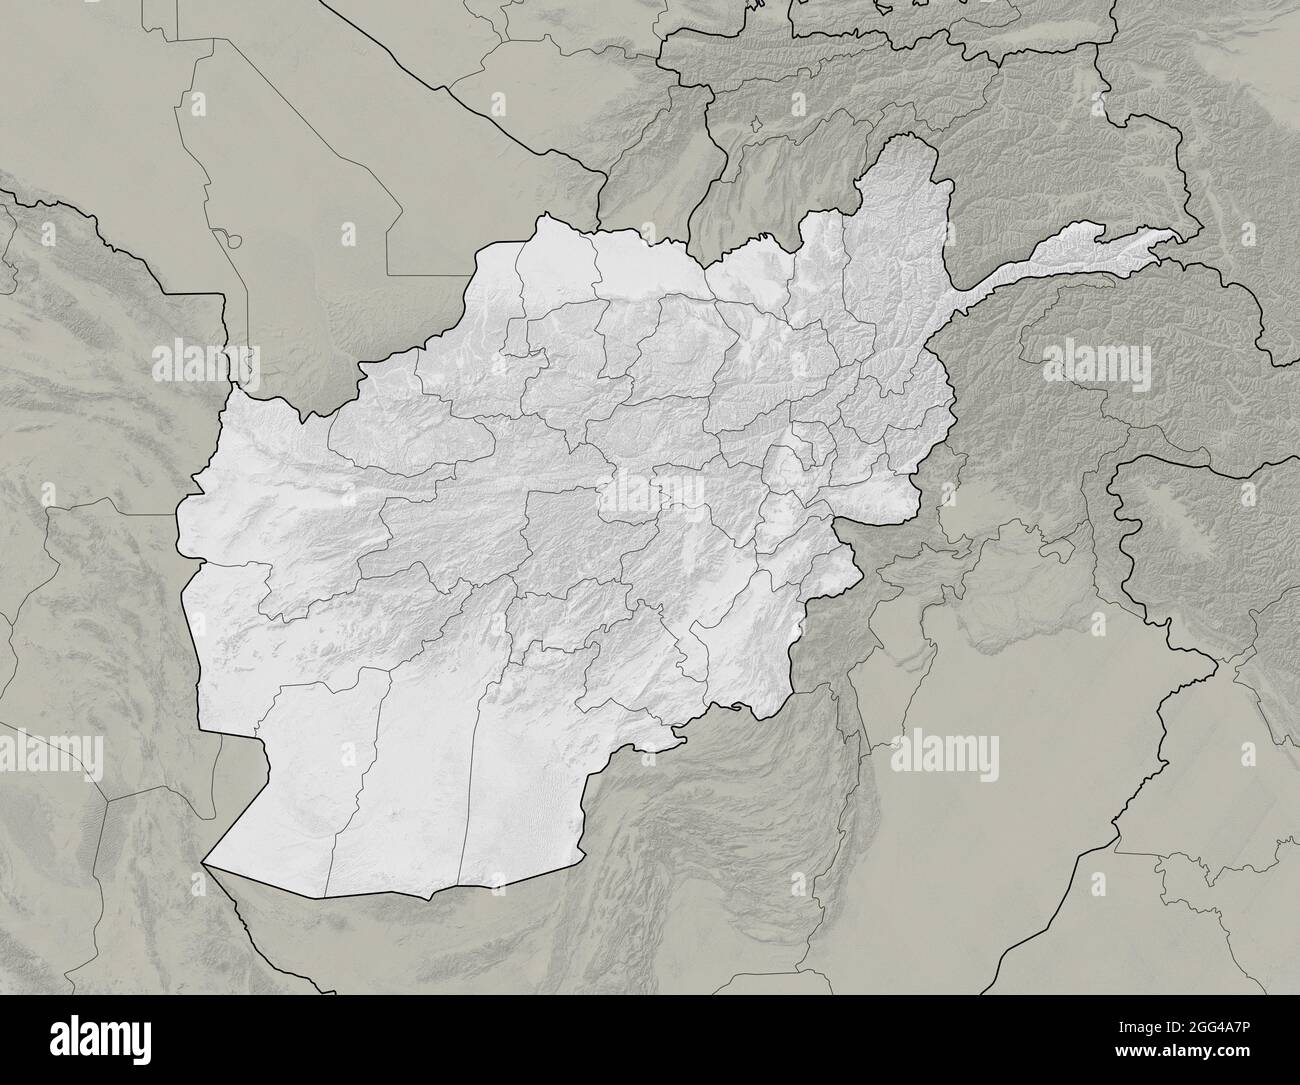 Mappa satellitare dell'Afghanistan, mappa fisica, rilievi e montagne. Bianco e nero. Confini nazionali e divisione in province. rendering 3d Foto Stock